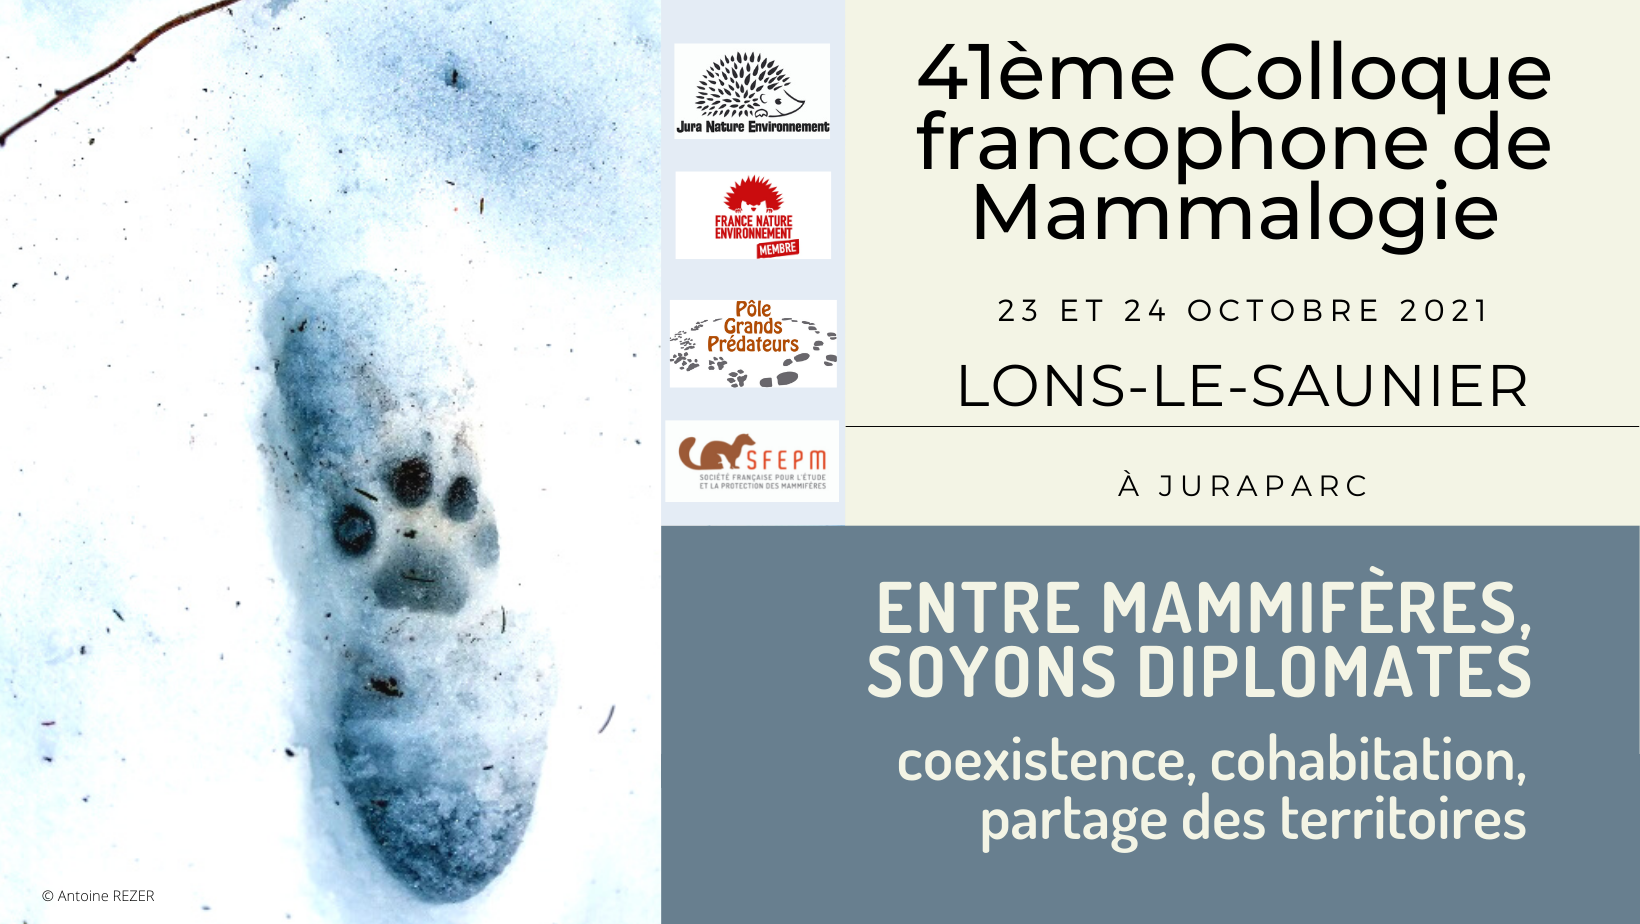 « Entre mammifères, soyons diplomates », JNE organise le 41ème colloque de la SFEPM – CLOTURE DES INSCRIPTIONS CE DIMANCHE 17 OCTOBRE !!